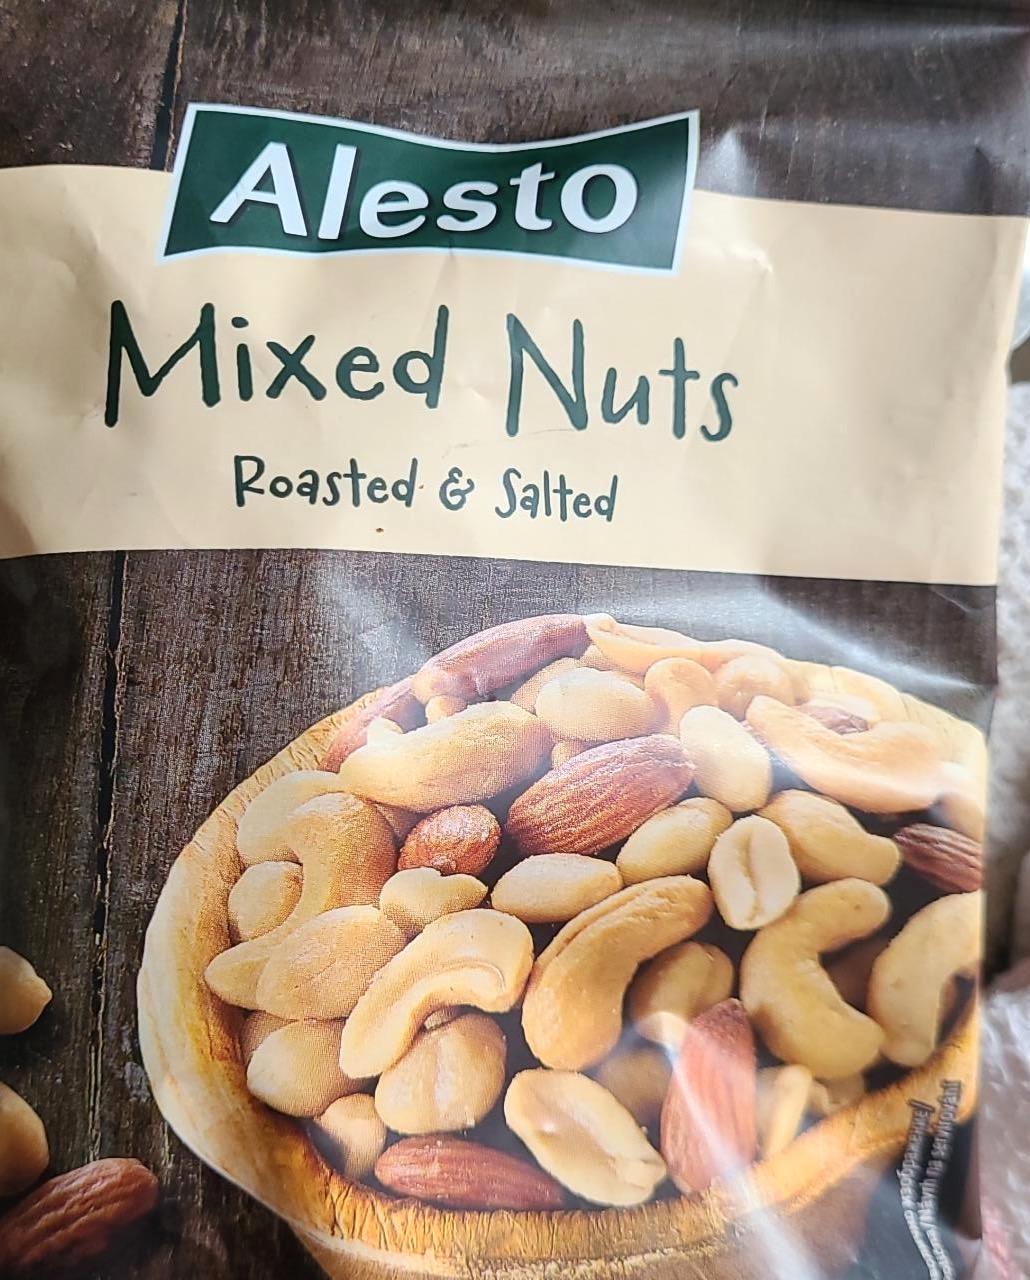 Képek - Mixed nuts Roasted & salted Alesto